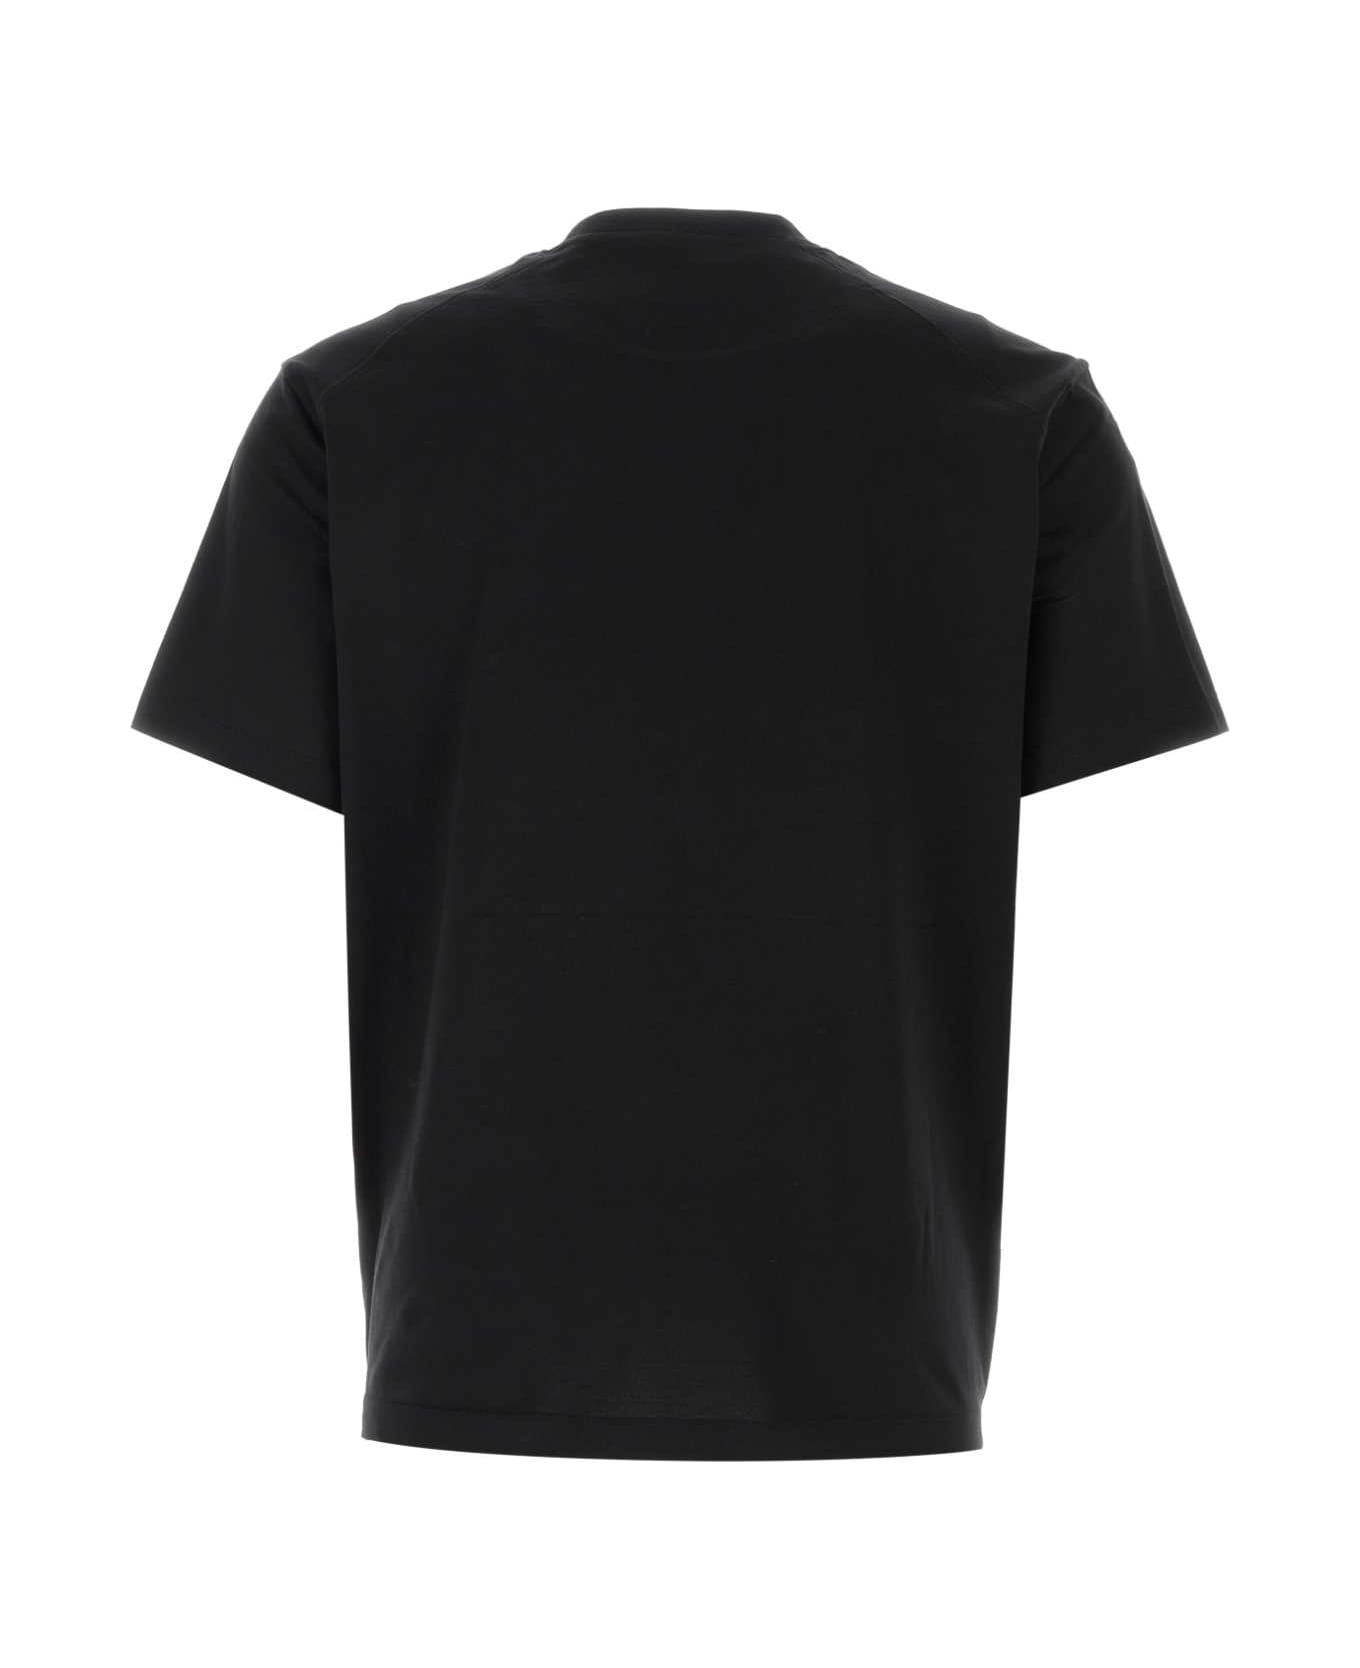 Y-3 Black Cotton T-shirt - BLACK シャツ